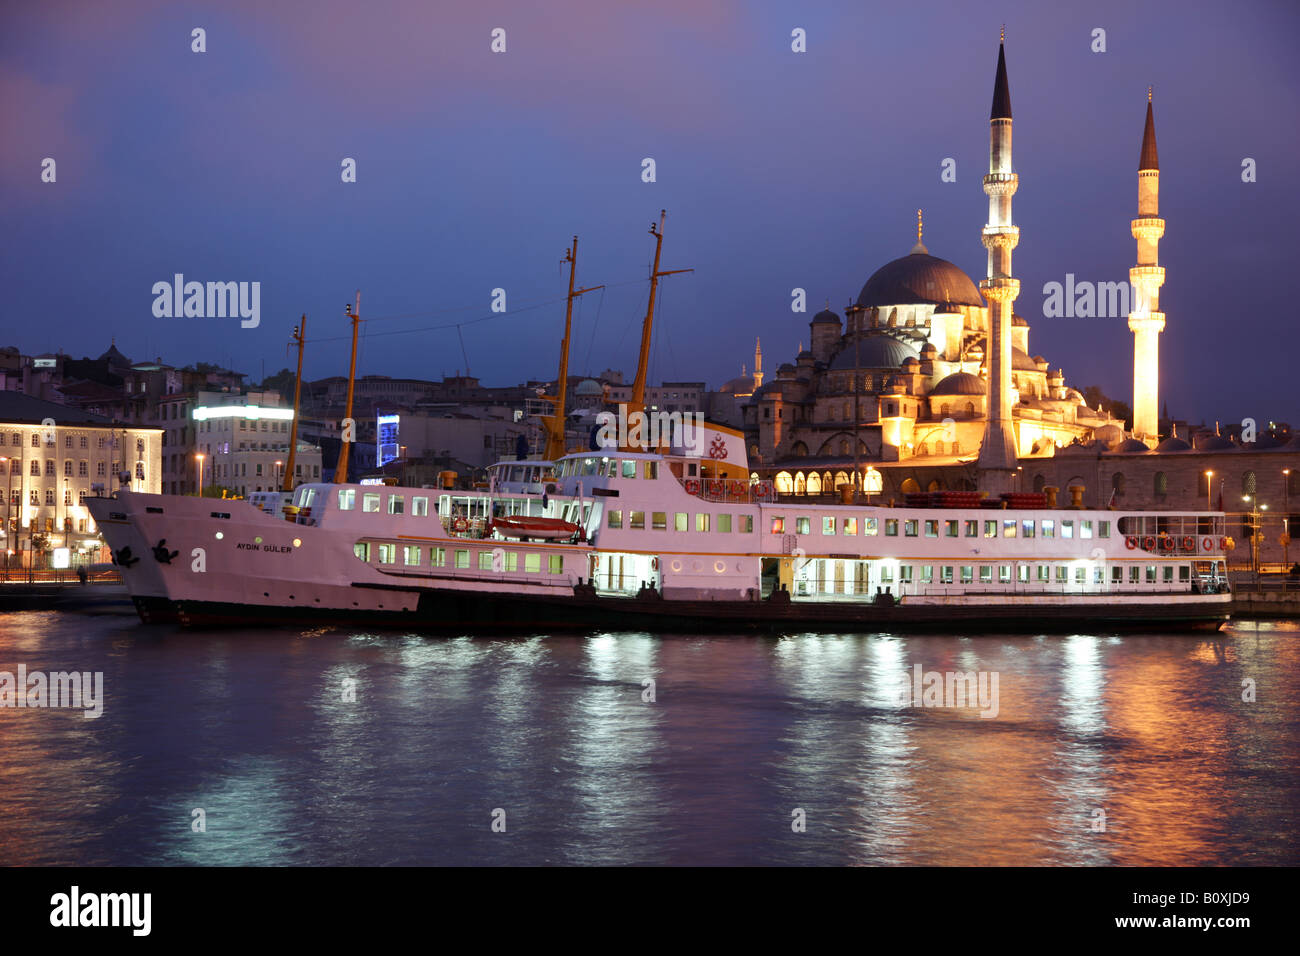 TUR Turchia Istanbul nuova moschea nella zona Eminoenue ferry boat Foto Stock